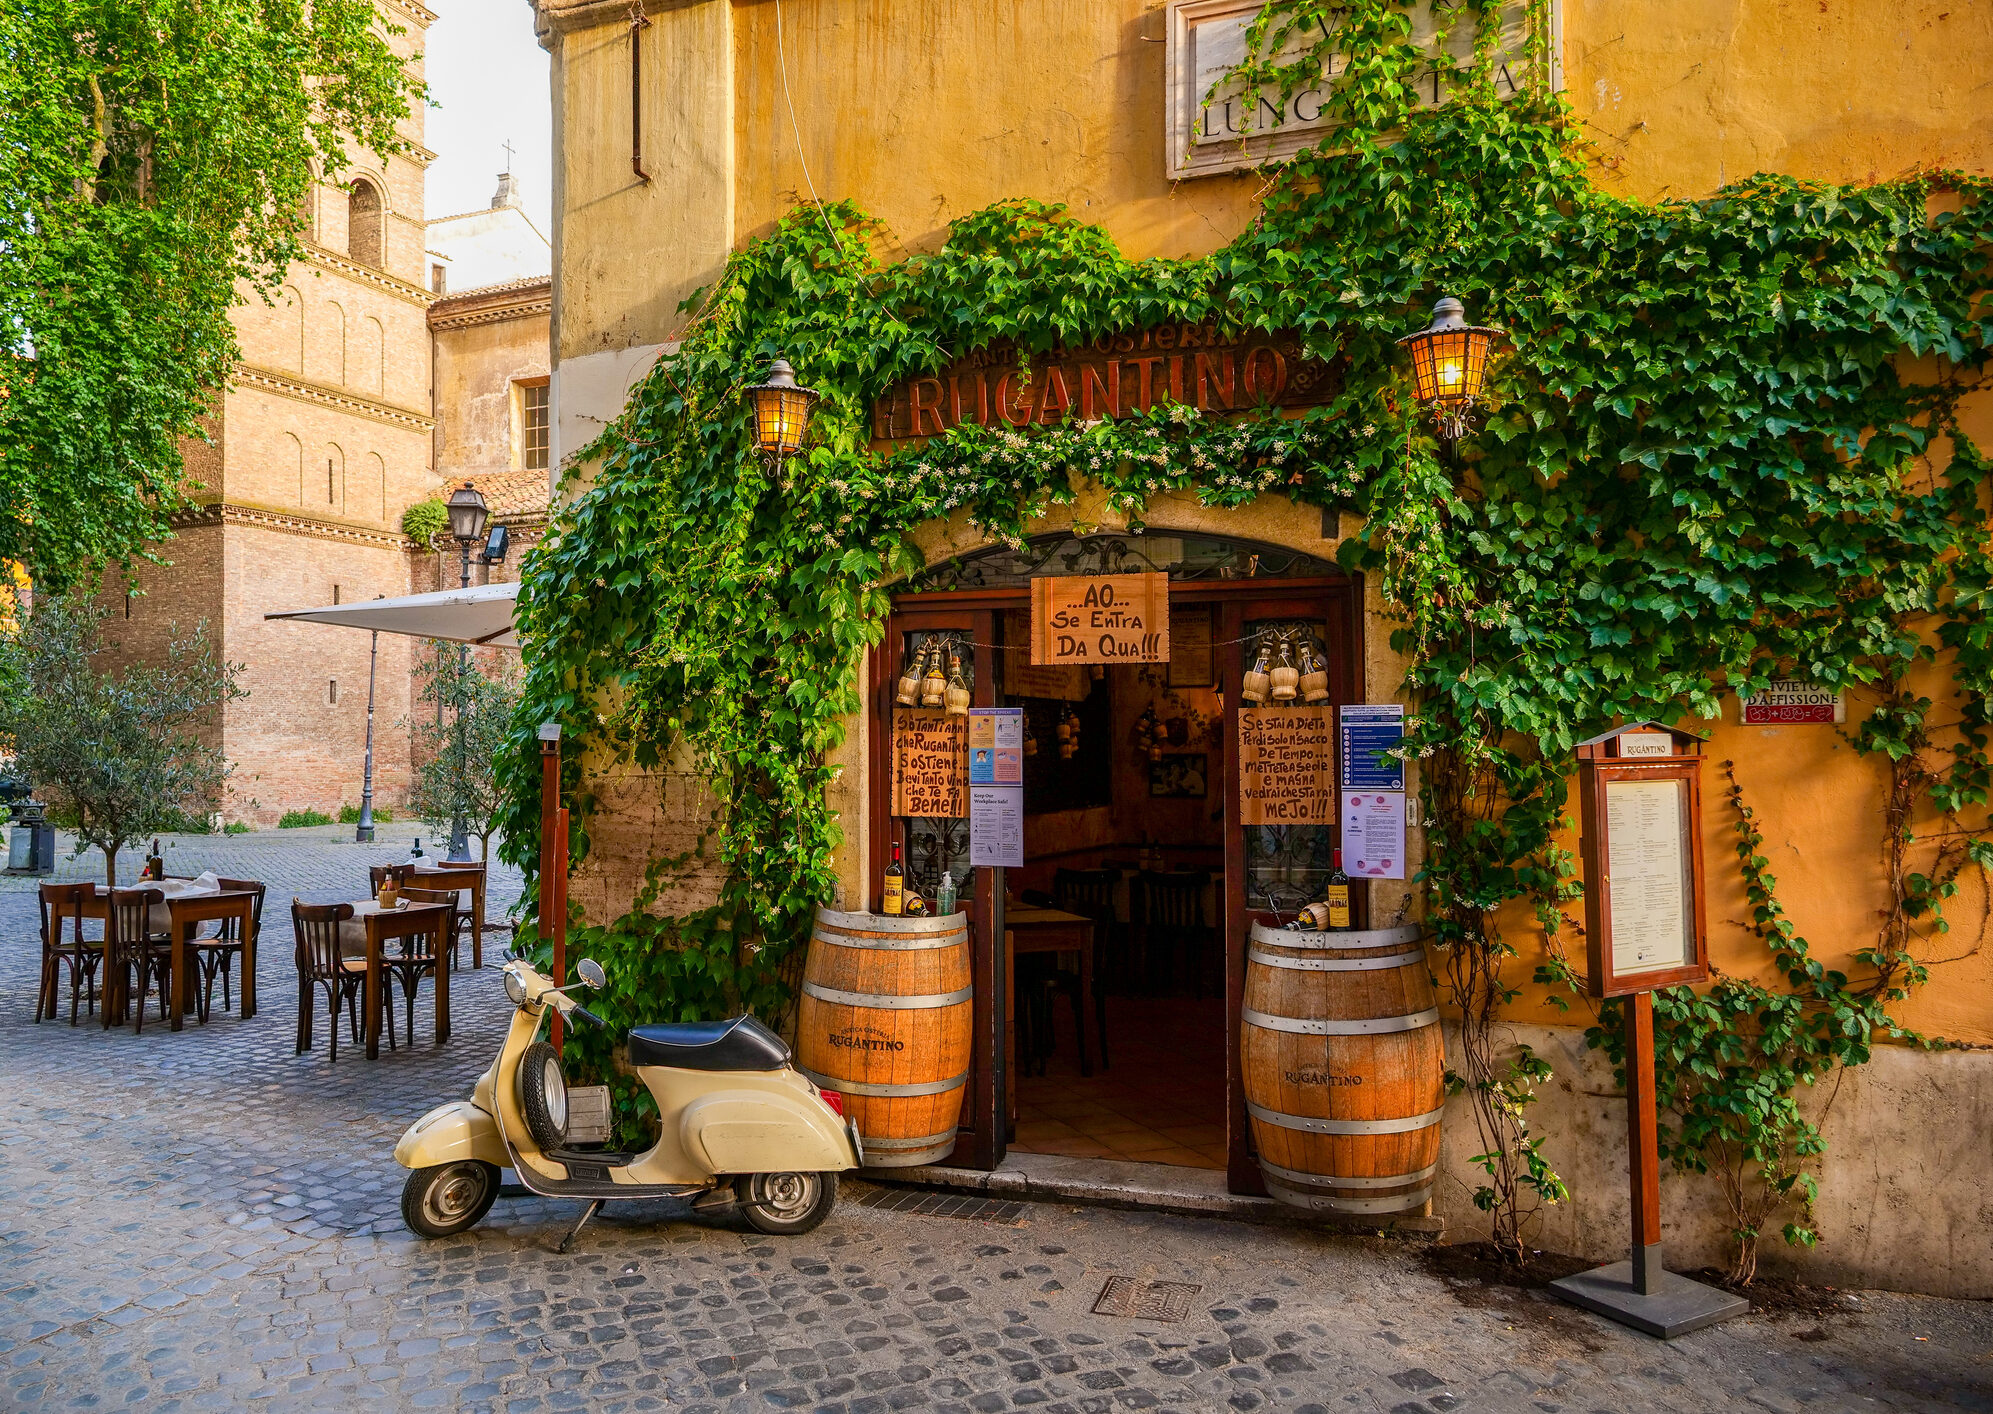 San Marco a la Romana, le chef-d'œuvre du café italien – Café San Marco